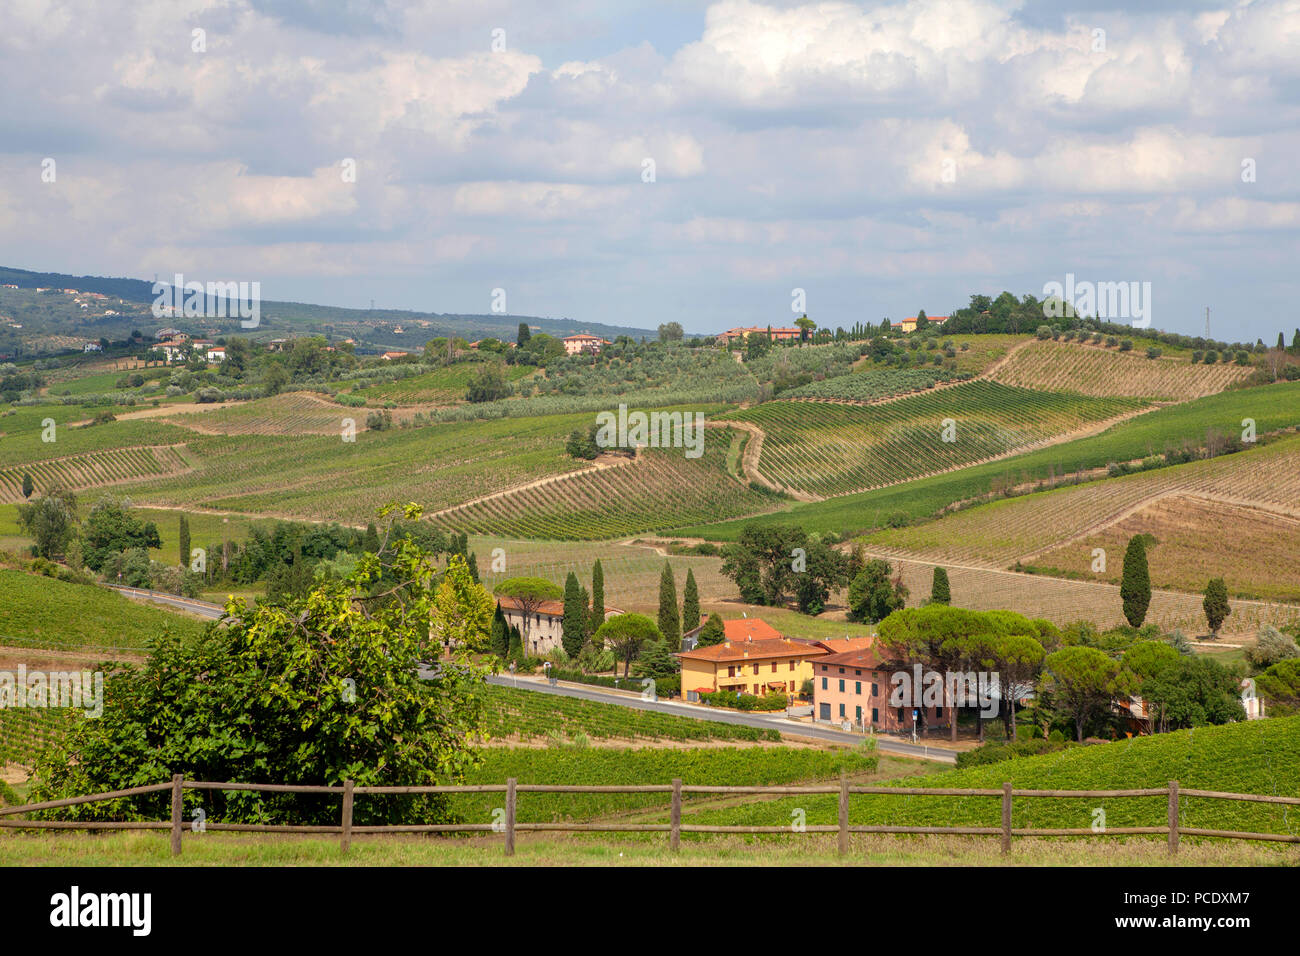 Fattoria Meix-devant-Virton vignoble en Toscane Italie situé dans la région de Chianti DOCG collines de Vinci une région prisée pour la production de vins doux Banque D'Images